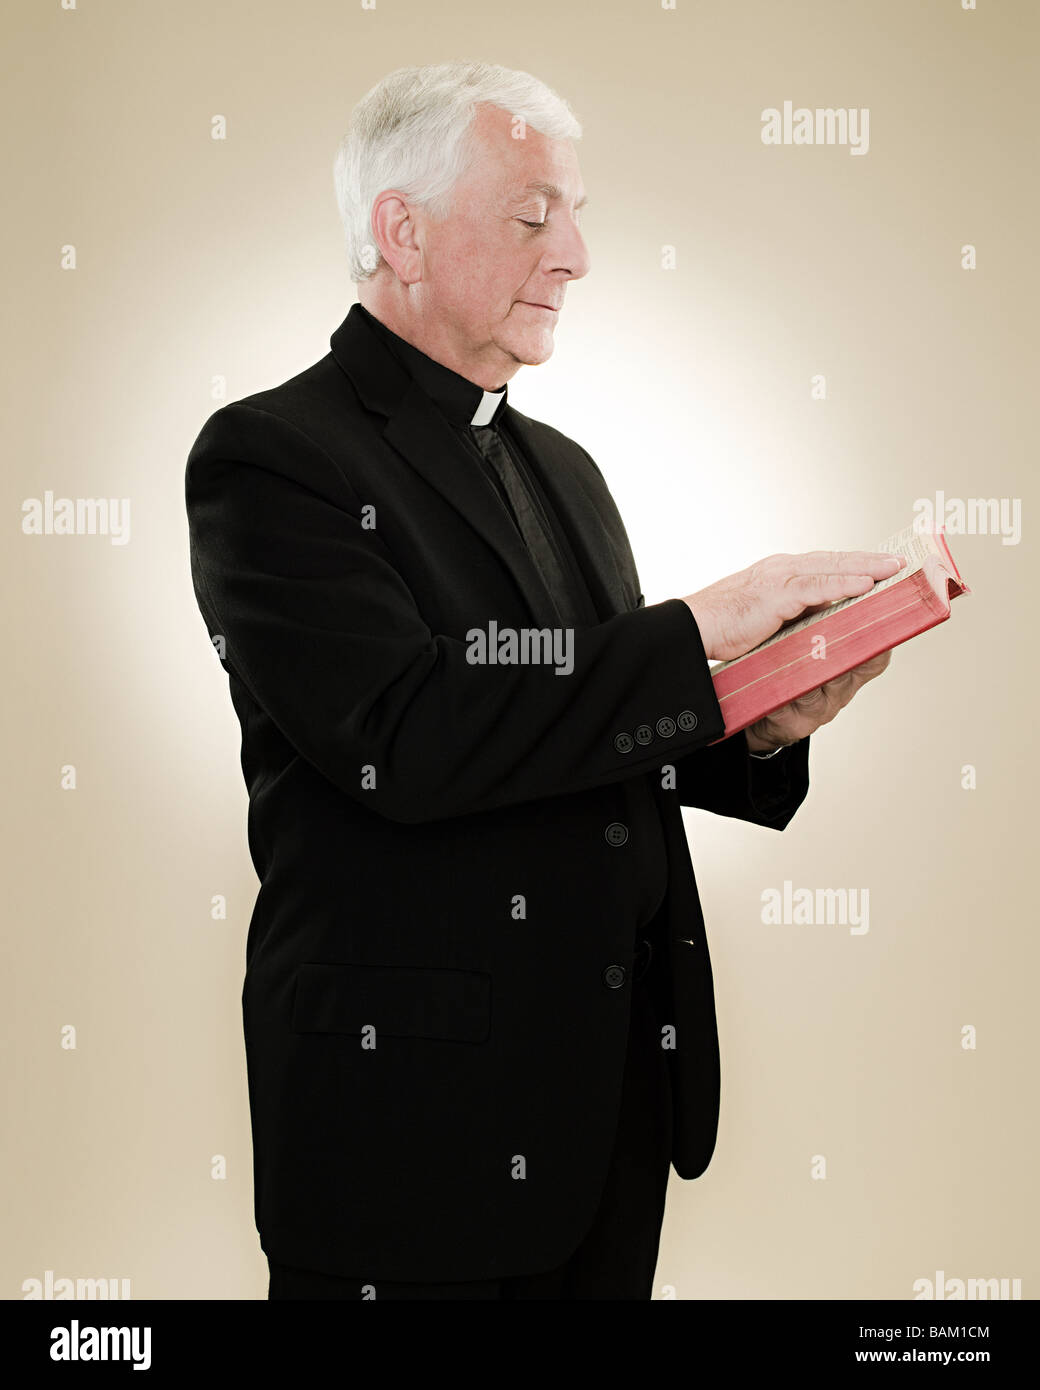 Un sacerdote leyendo una biblia Foto de stock